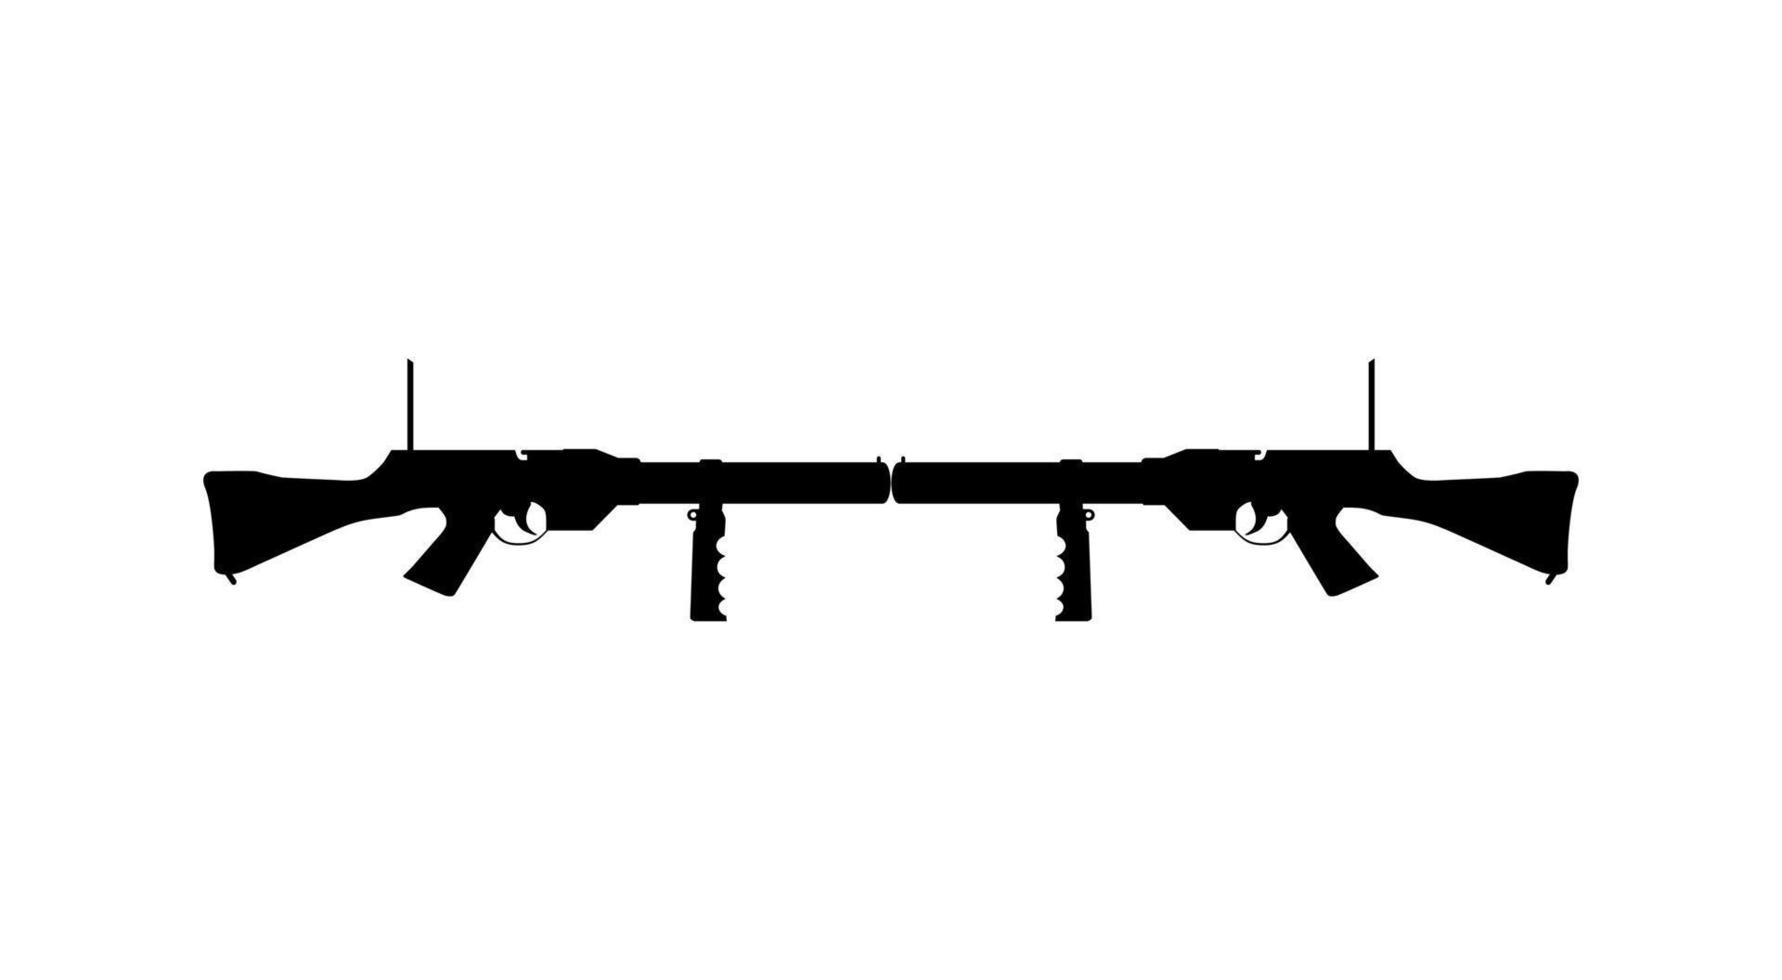 silhueta de arma de arma para logotipo, pictograma, ilustração de arte, site ou elemento de design gráfico. ilustração vetorial vetor